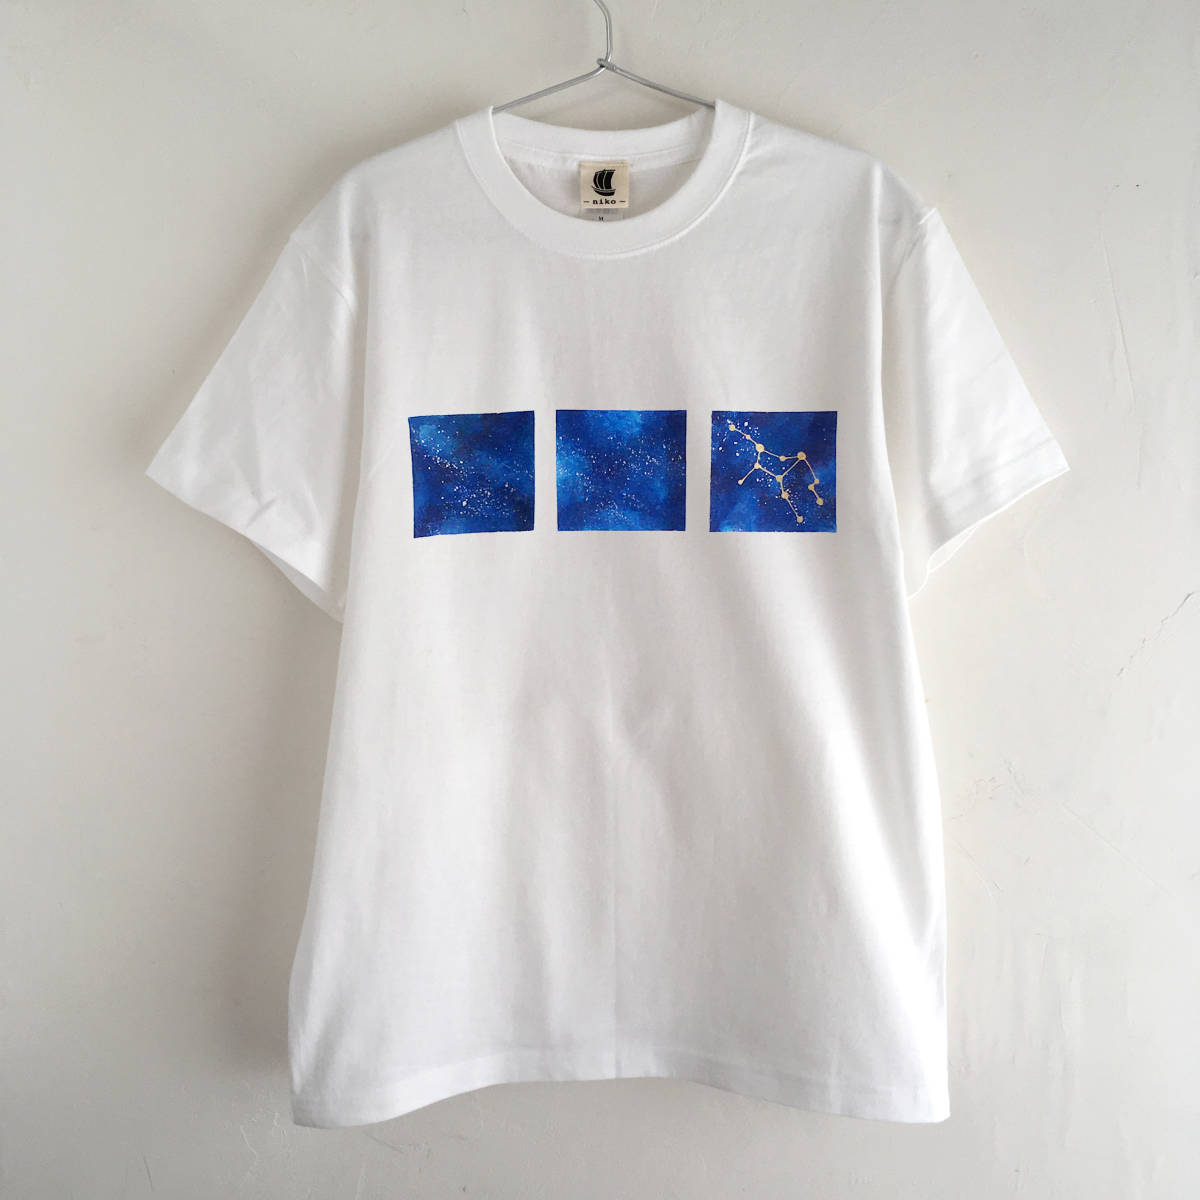 T-shirt motif espace dessiné à la main avec 12 constellations au choix, blanc, Taille L, galaxie, ciel étoilé, Taille L, col rond, à motifs